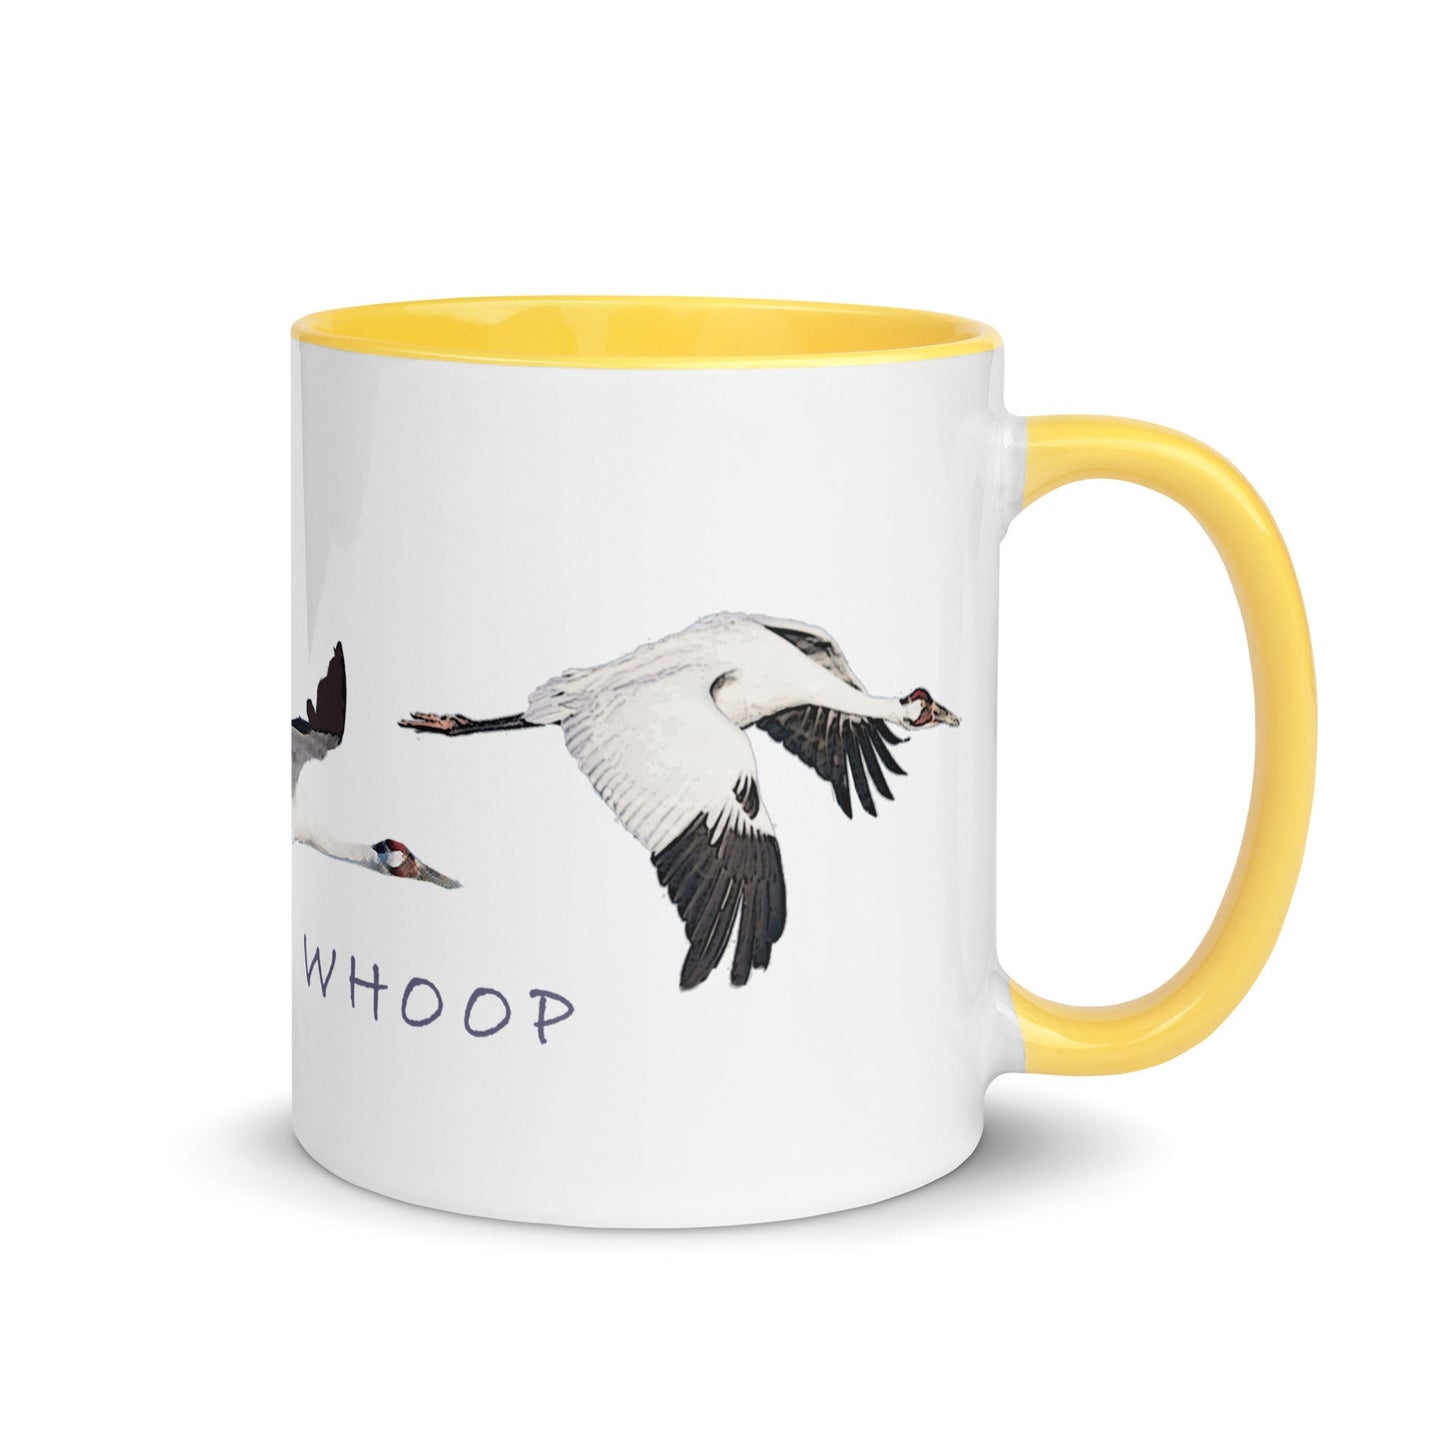 Whoop Whoop Whooping Crane Mug with Color Inside